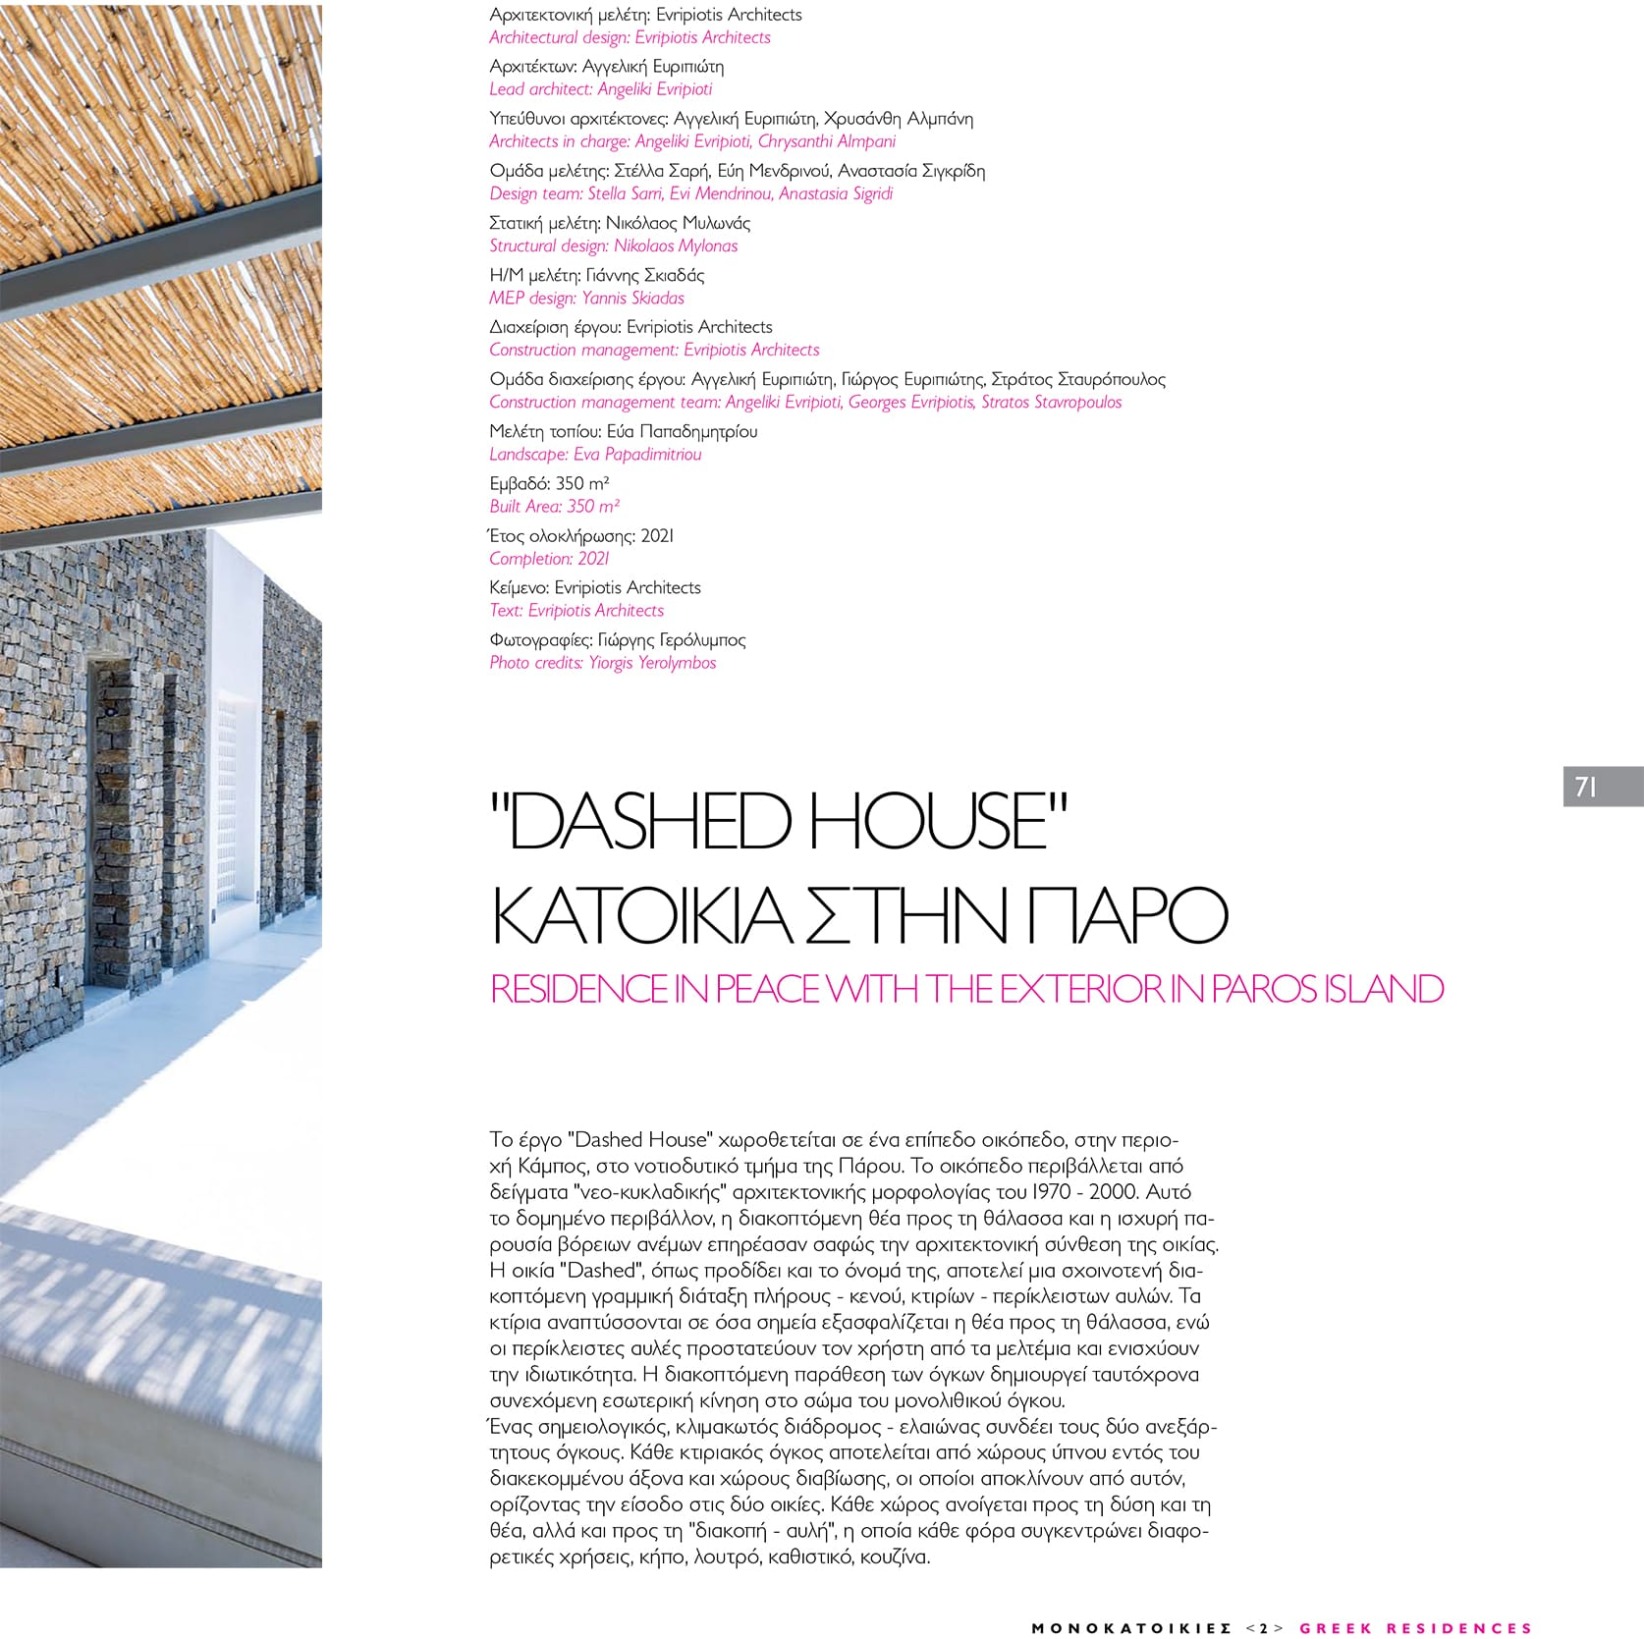 monokatoikies2-dashed-house-evripiotis-architects-03